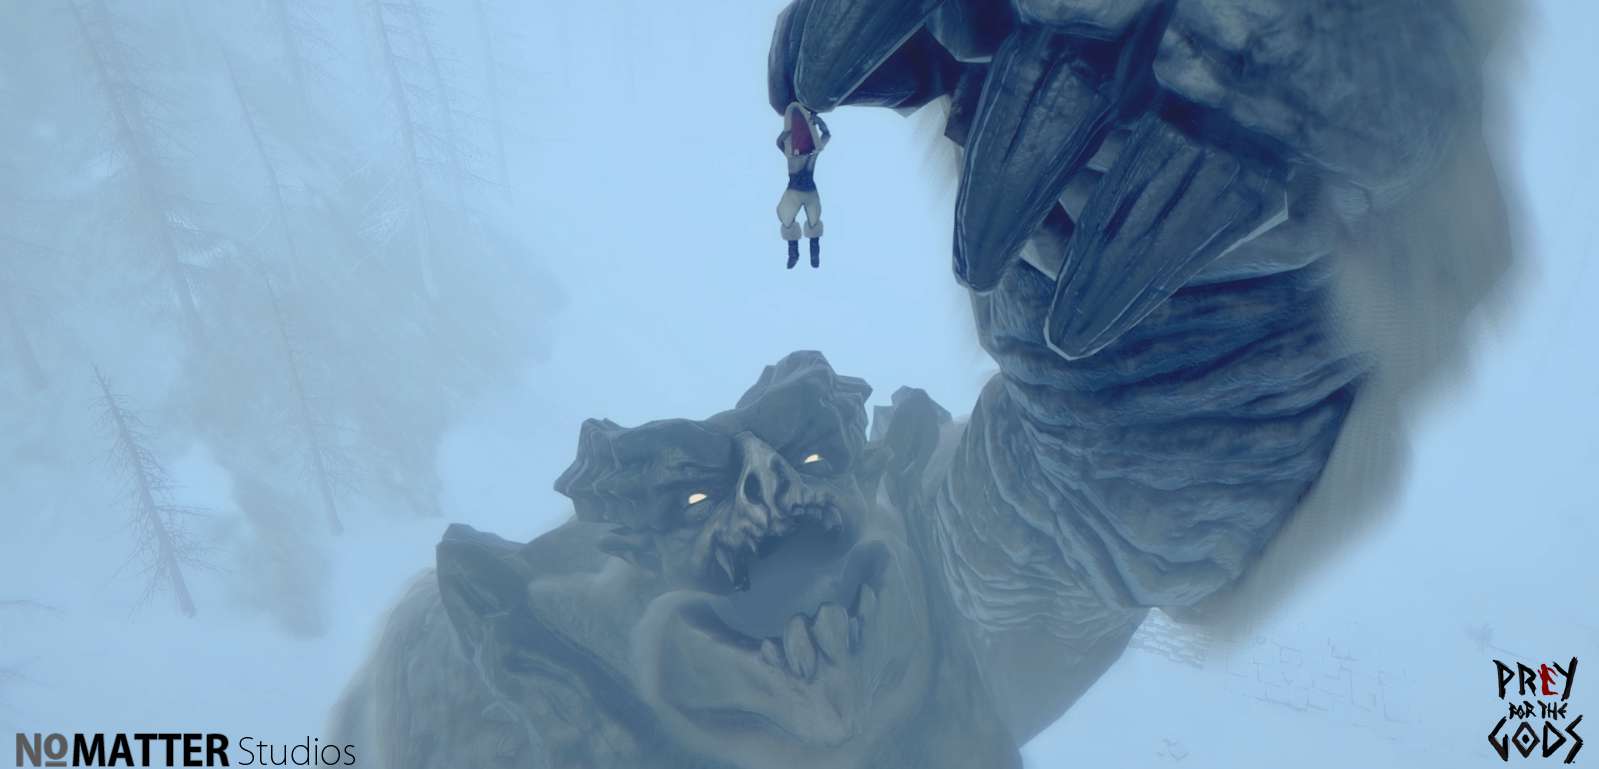 Prey for the Gods. Gra inspirowana Shadow of the Colossus zmienia tytuł pod naporem żądań ZeniMax